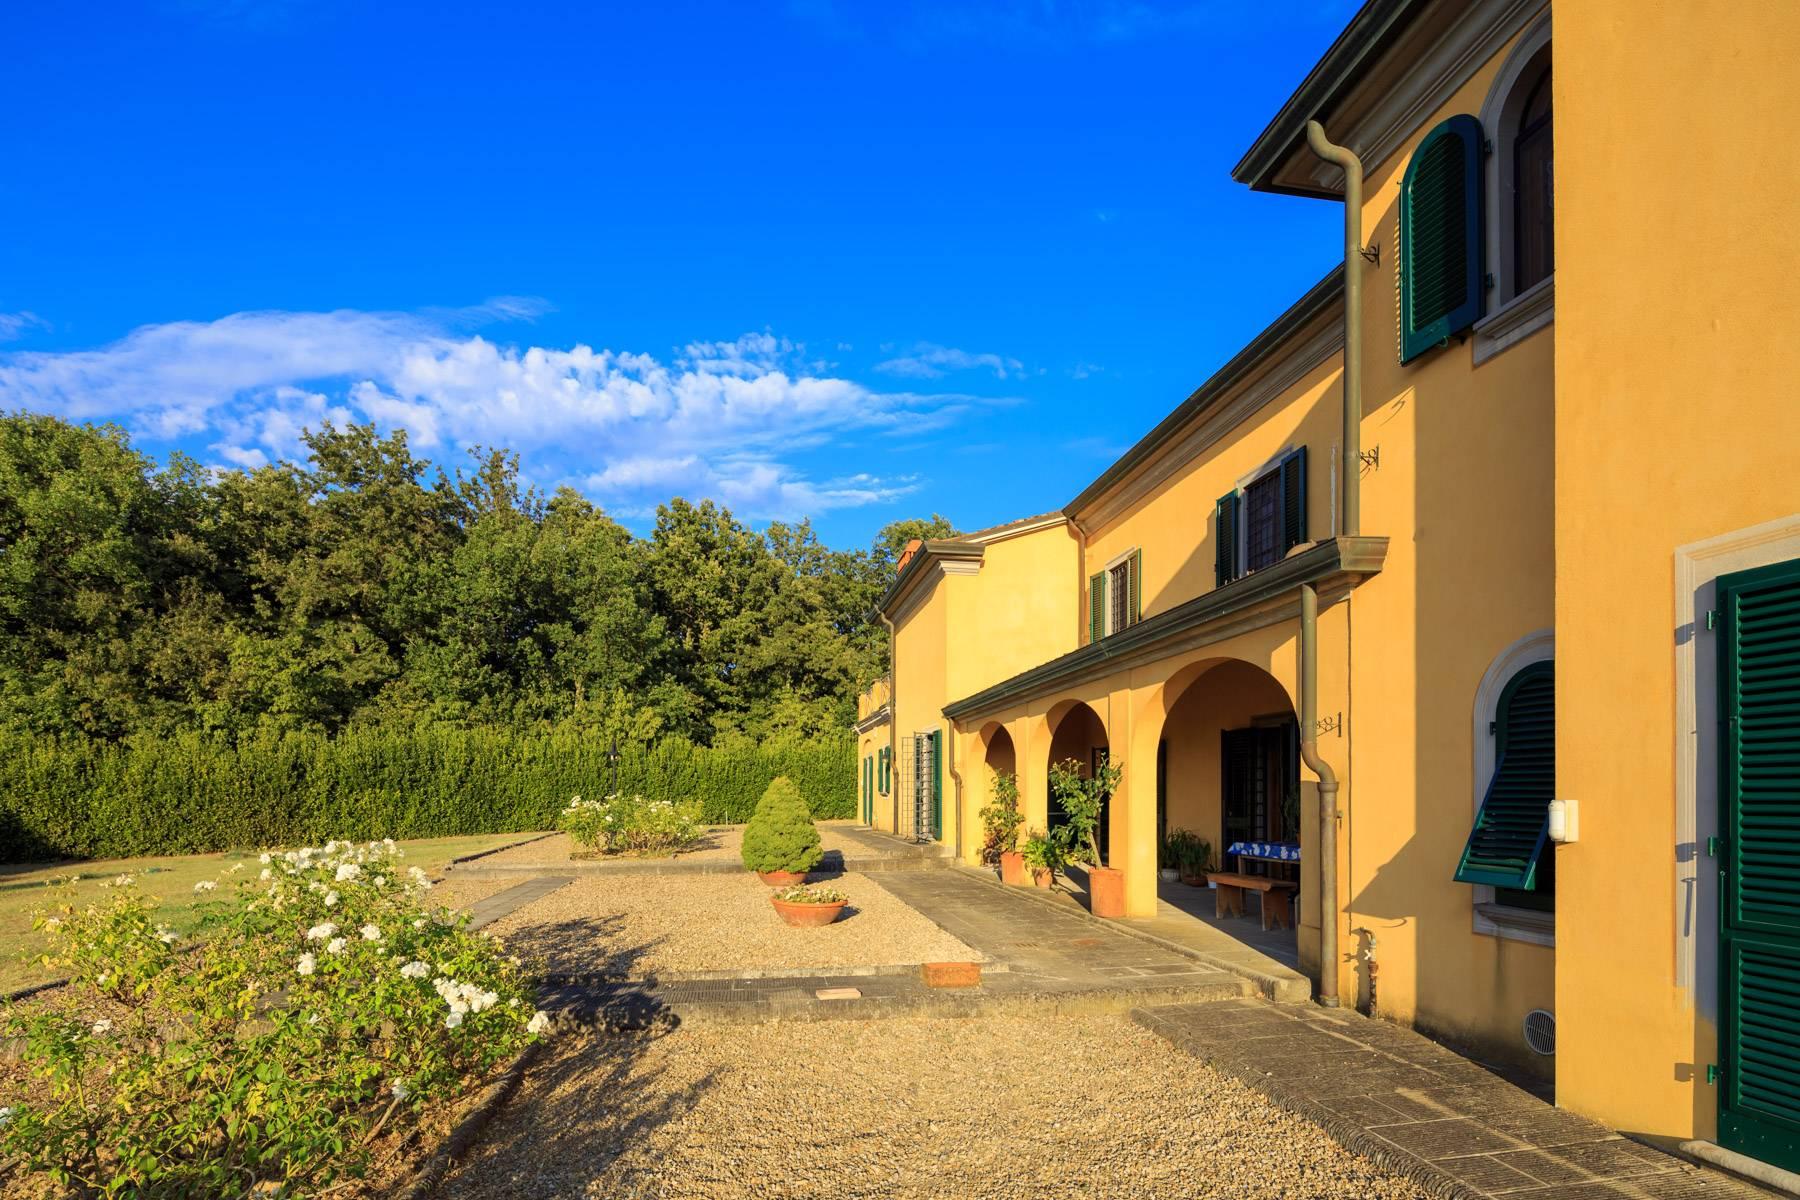 Luxury villa between Pisa and Florence - 30